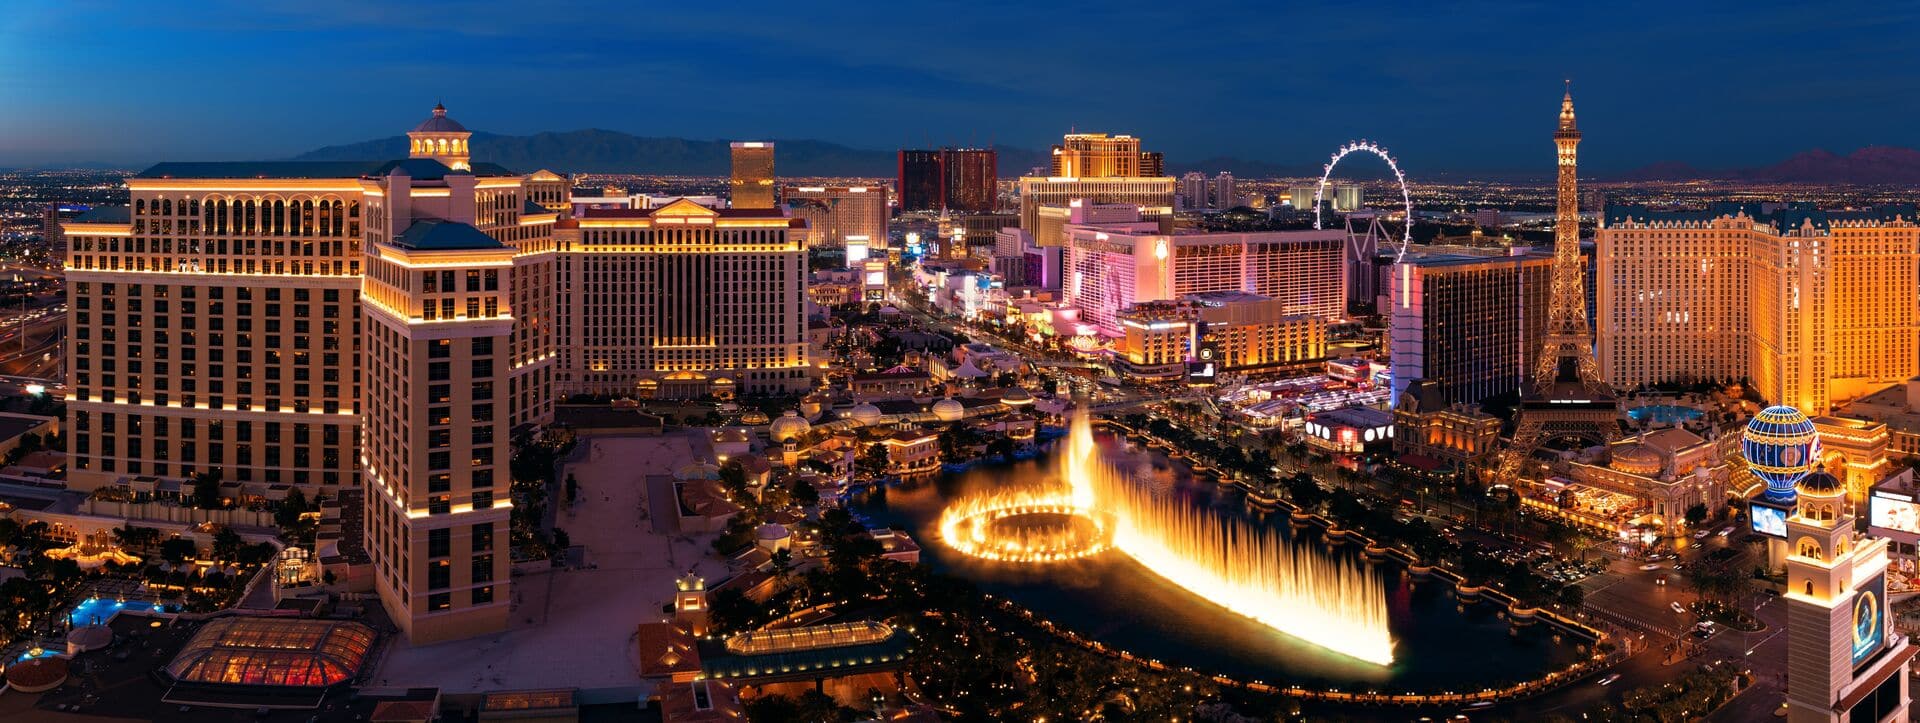 Blick auf Las Vegas Strip bei Nacht - Casino-Hotels